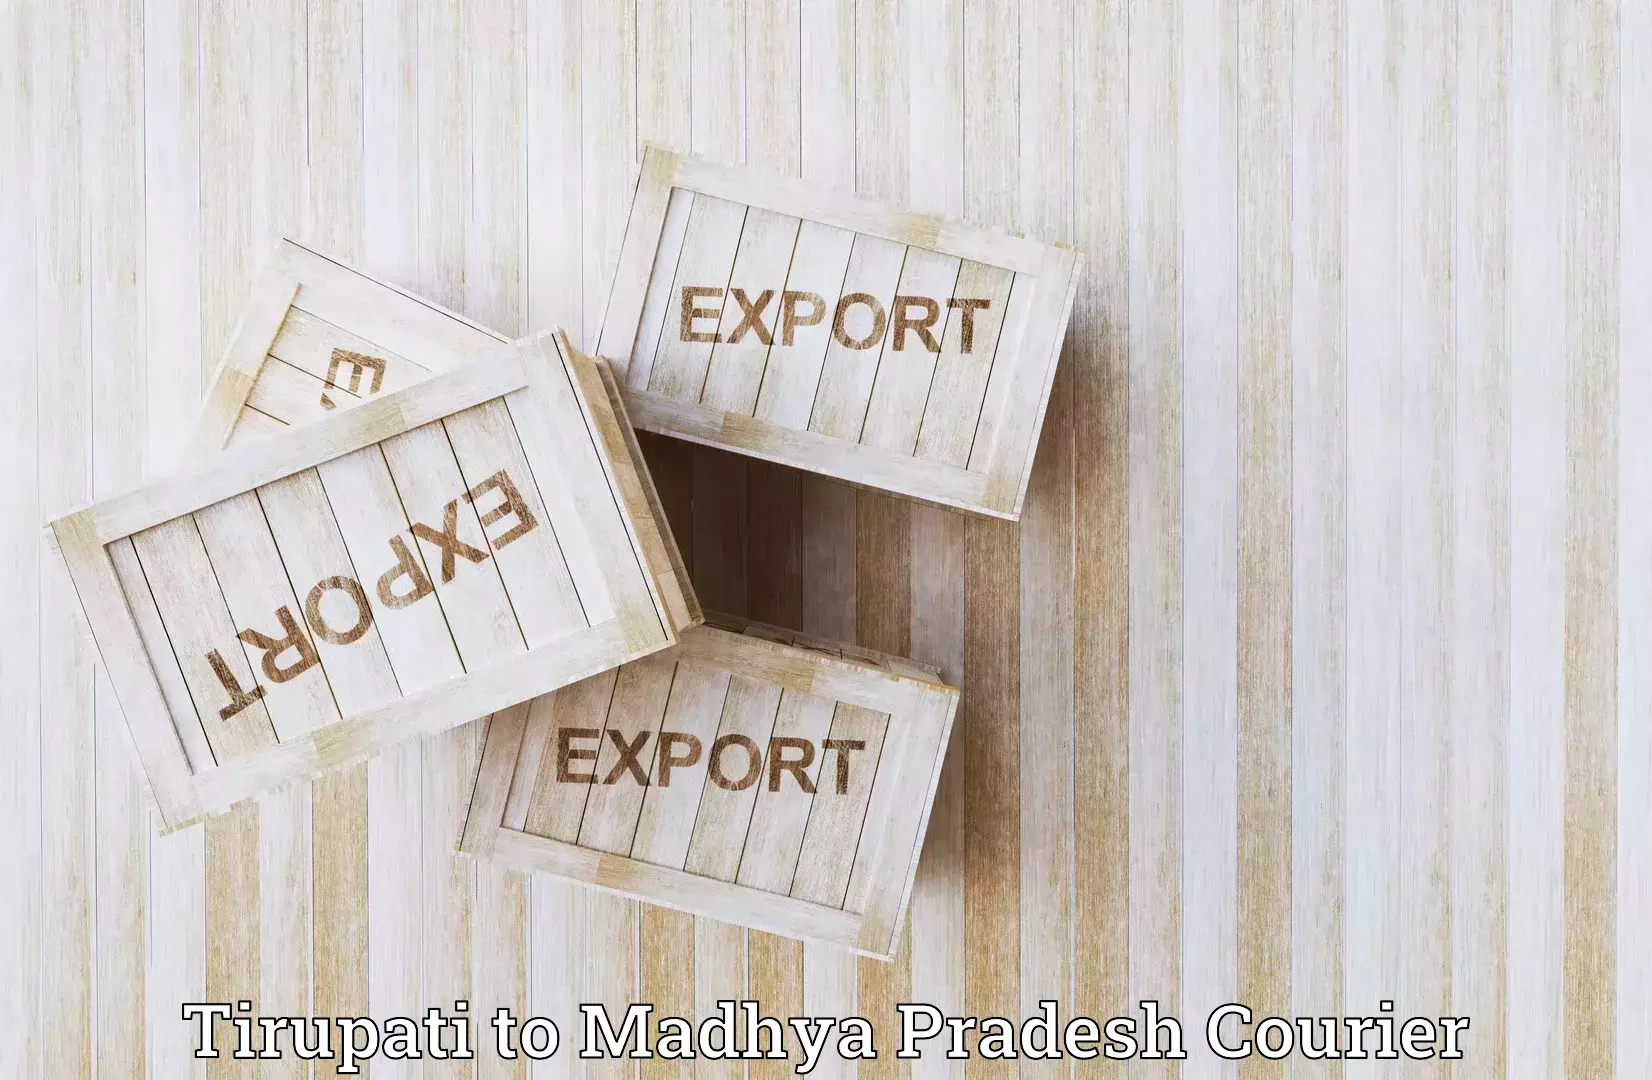 Express package handling Tirupati to Sheopur